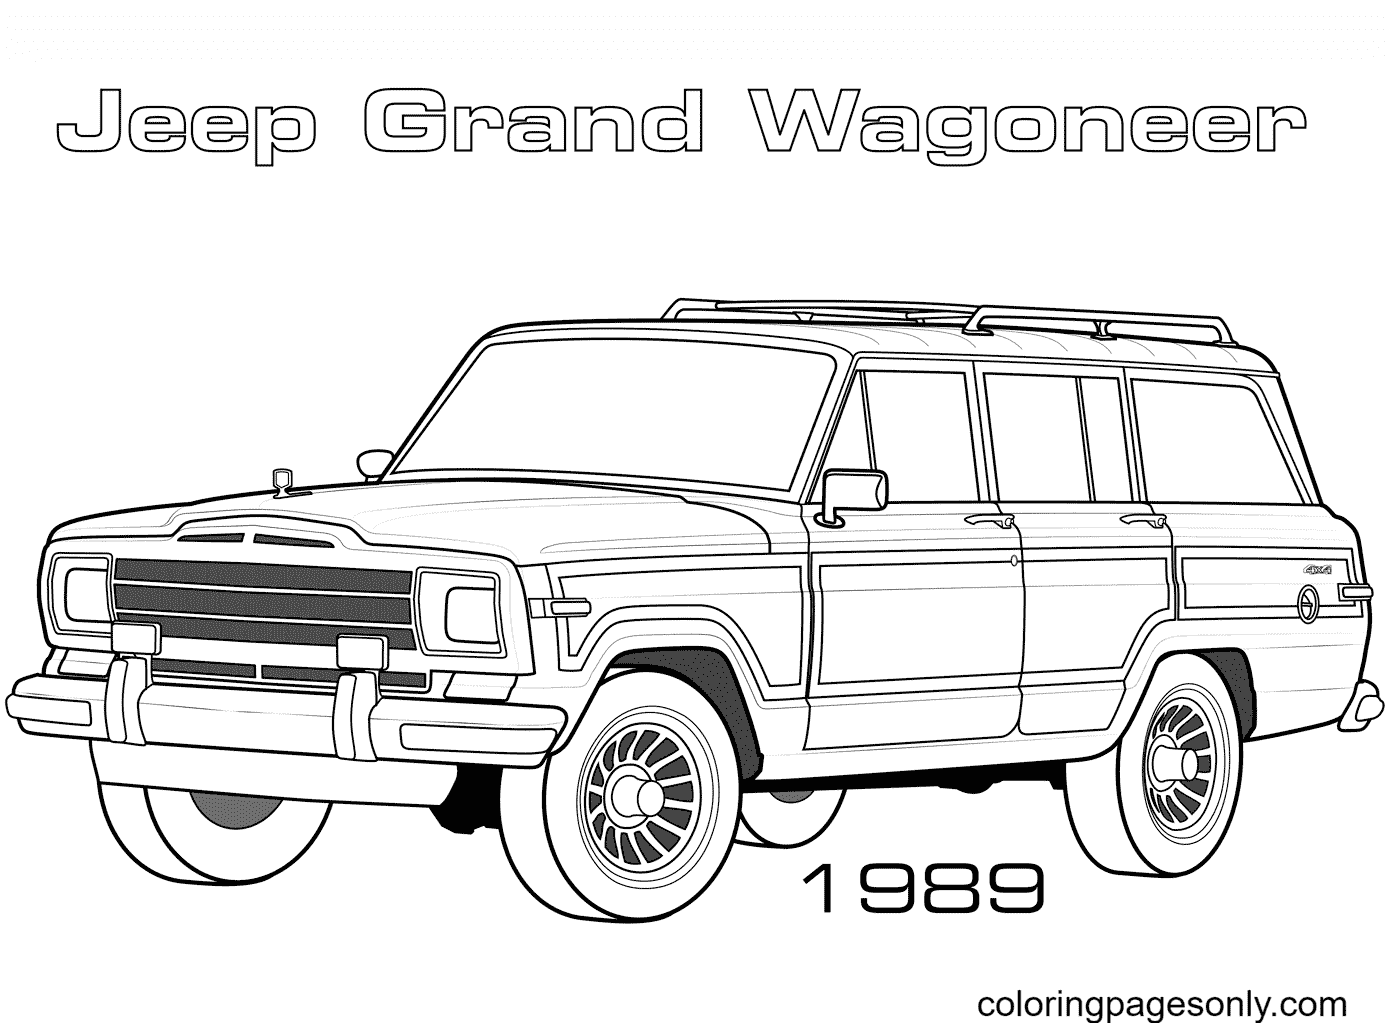 1989 Jeep Grand Wagoneer von Jeep